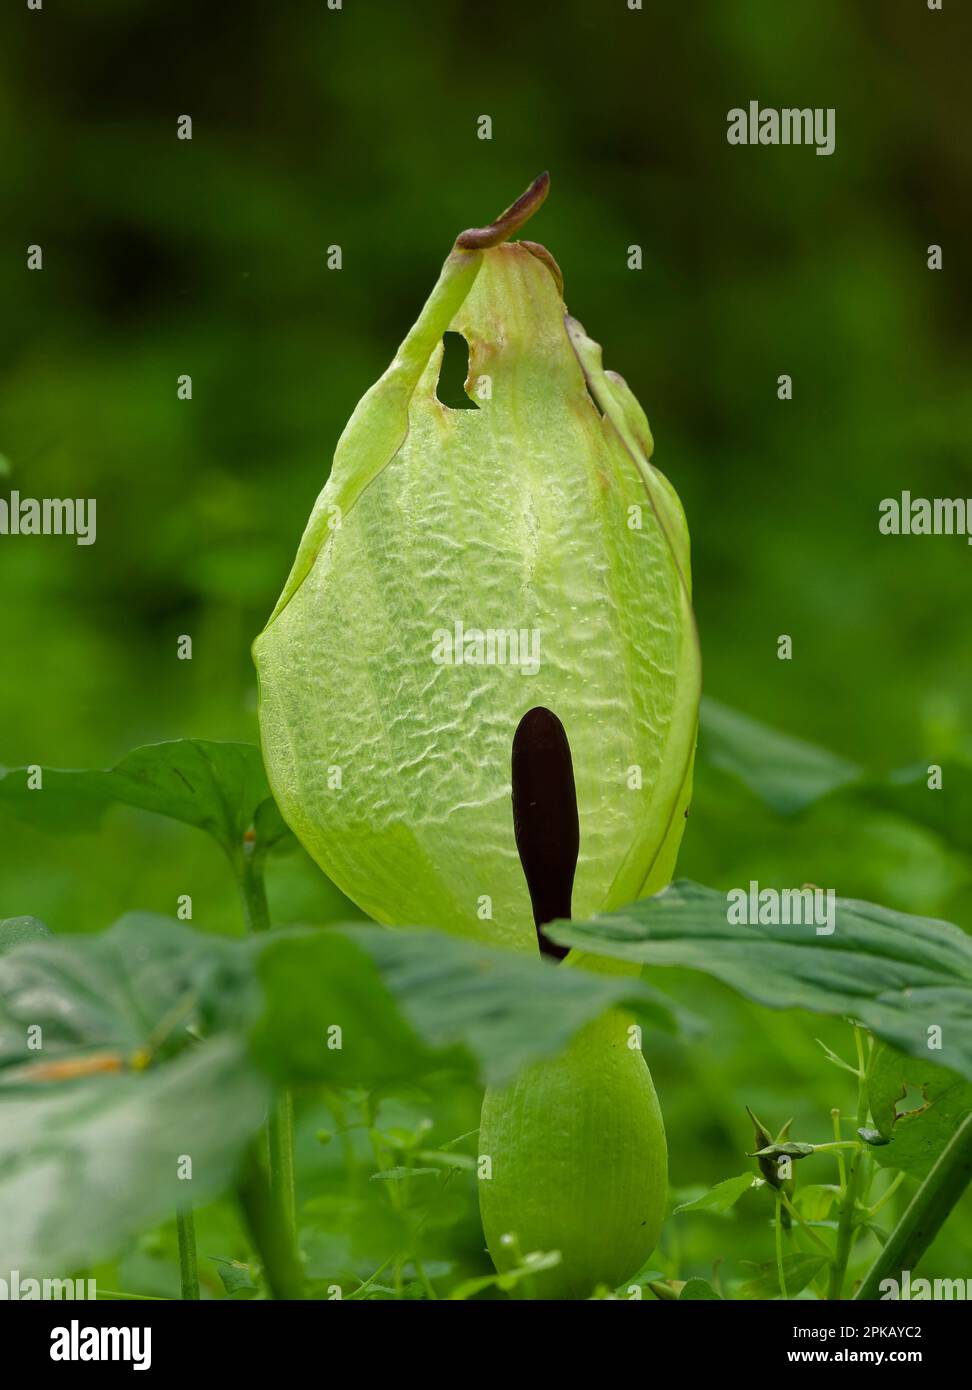 Spotted arum, Arum maculatum Stock Photo